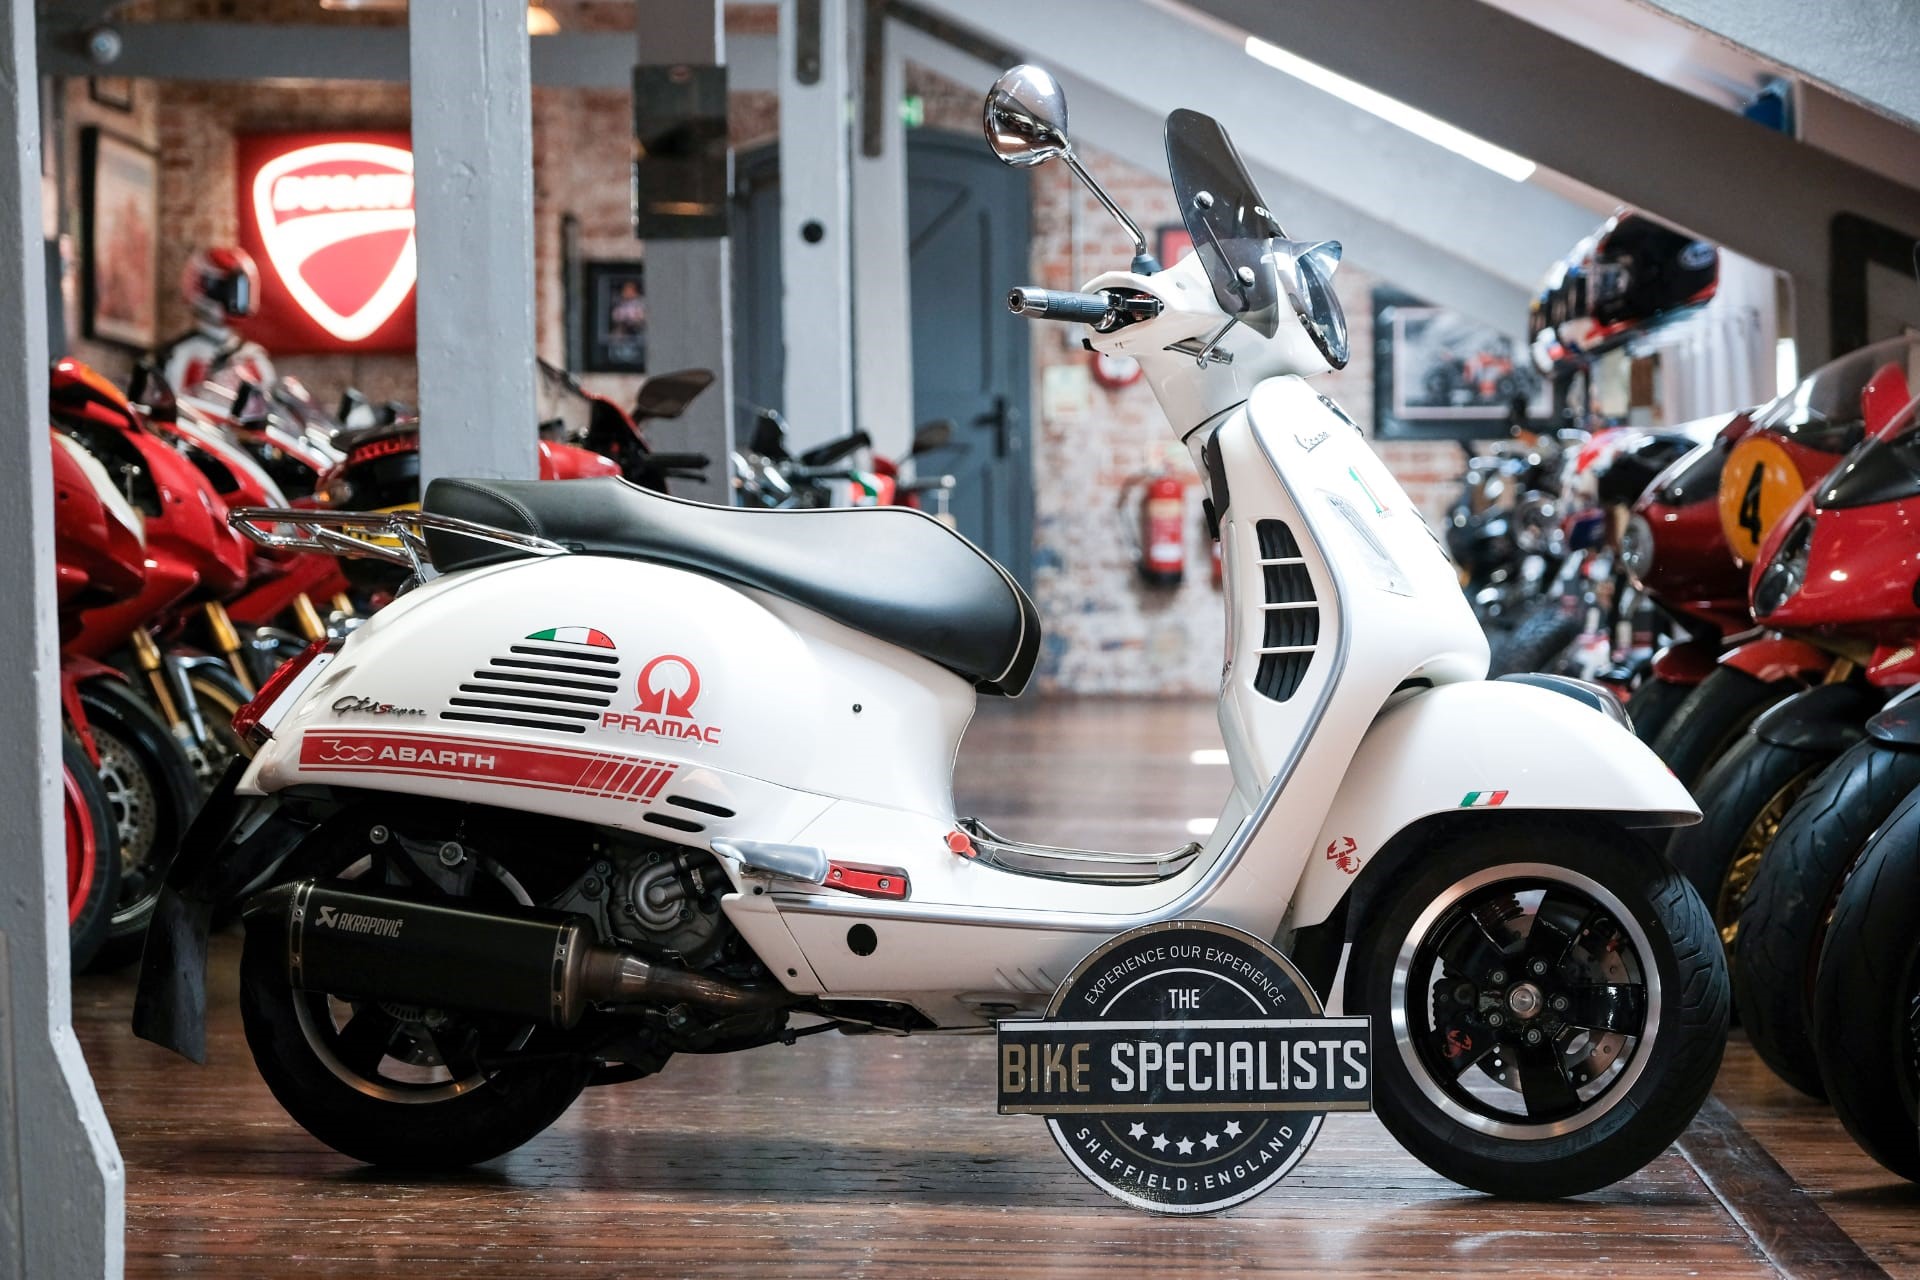 Piaggio Vespa GTS, The Bike Specialists